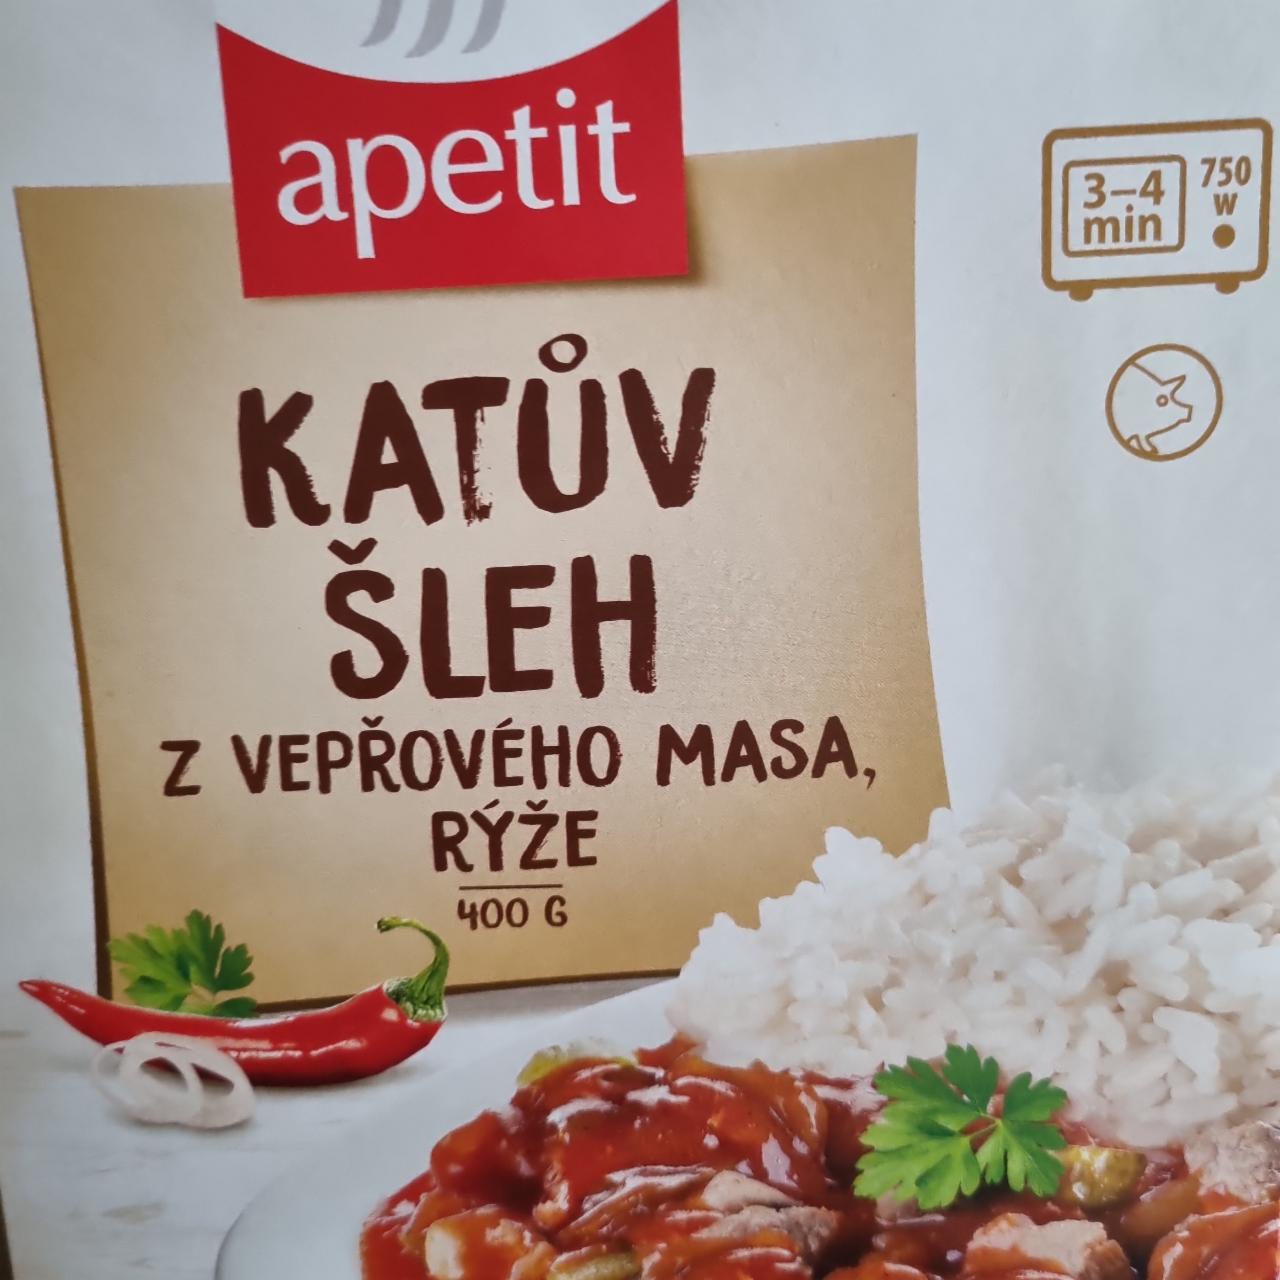 Fotografie - Katův šleh z vepřového masa s rýží Apetit